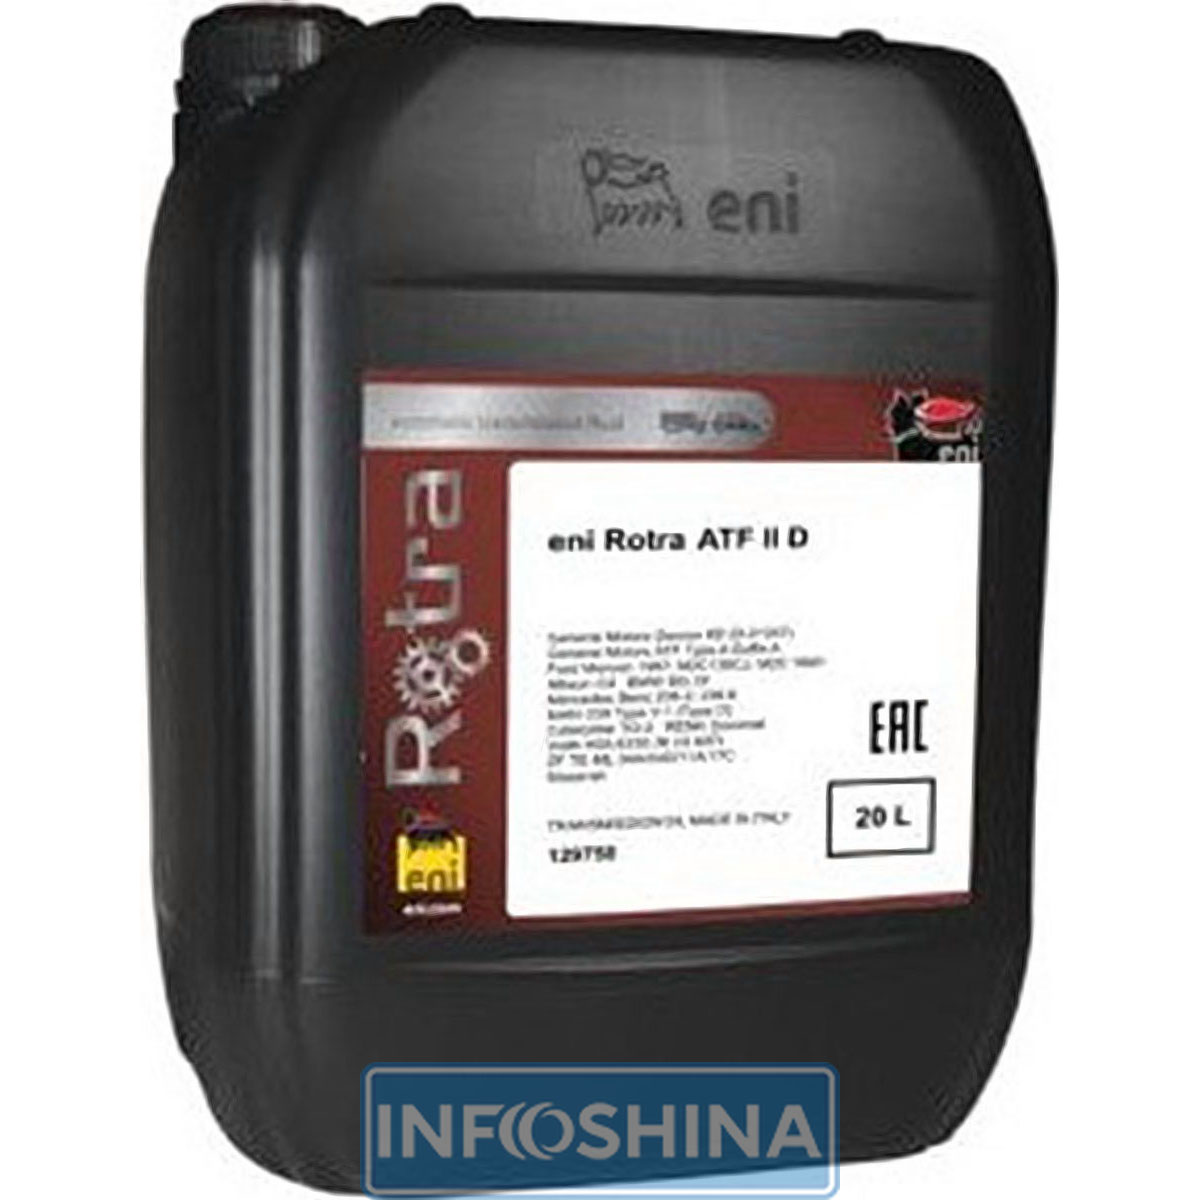 Купить масло Eni Rotra ATF II D (20л)